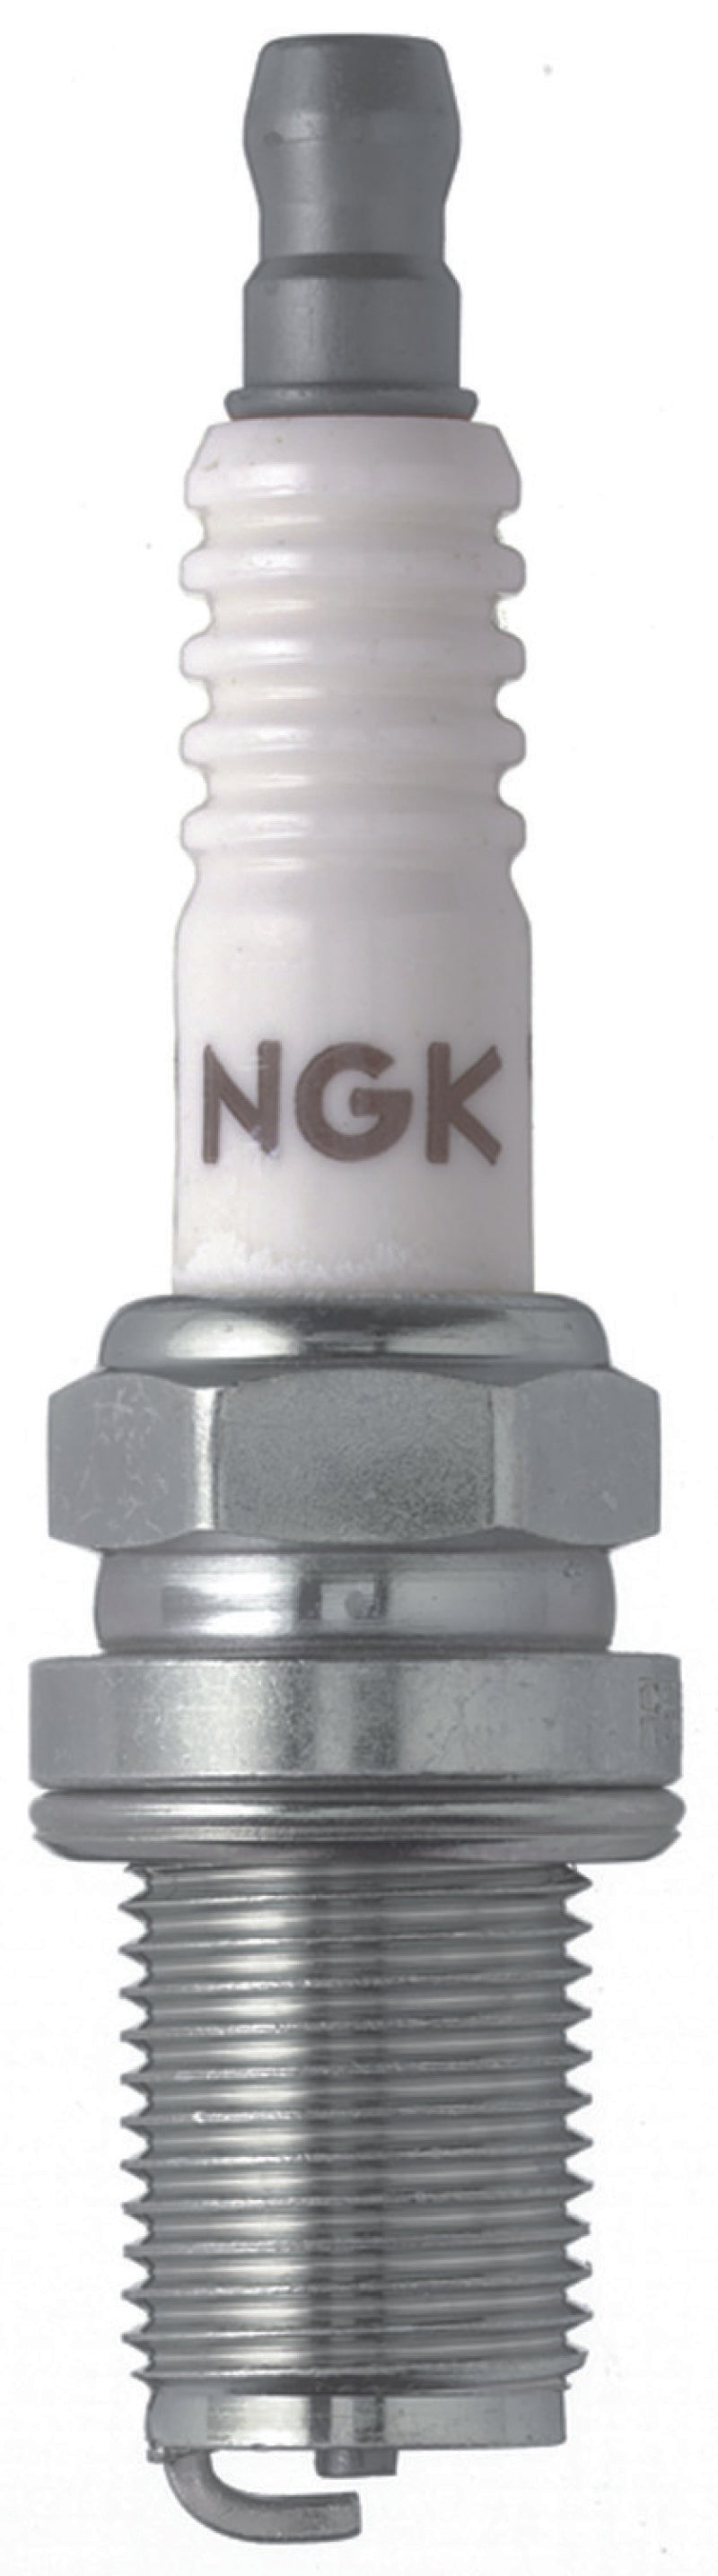 NGK Racing Spark Plug Box of 4 (R5671A-9).